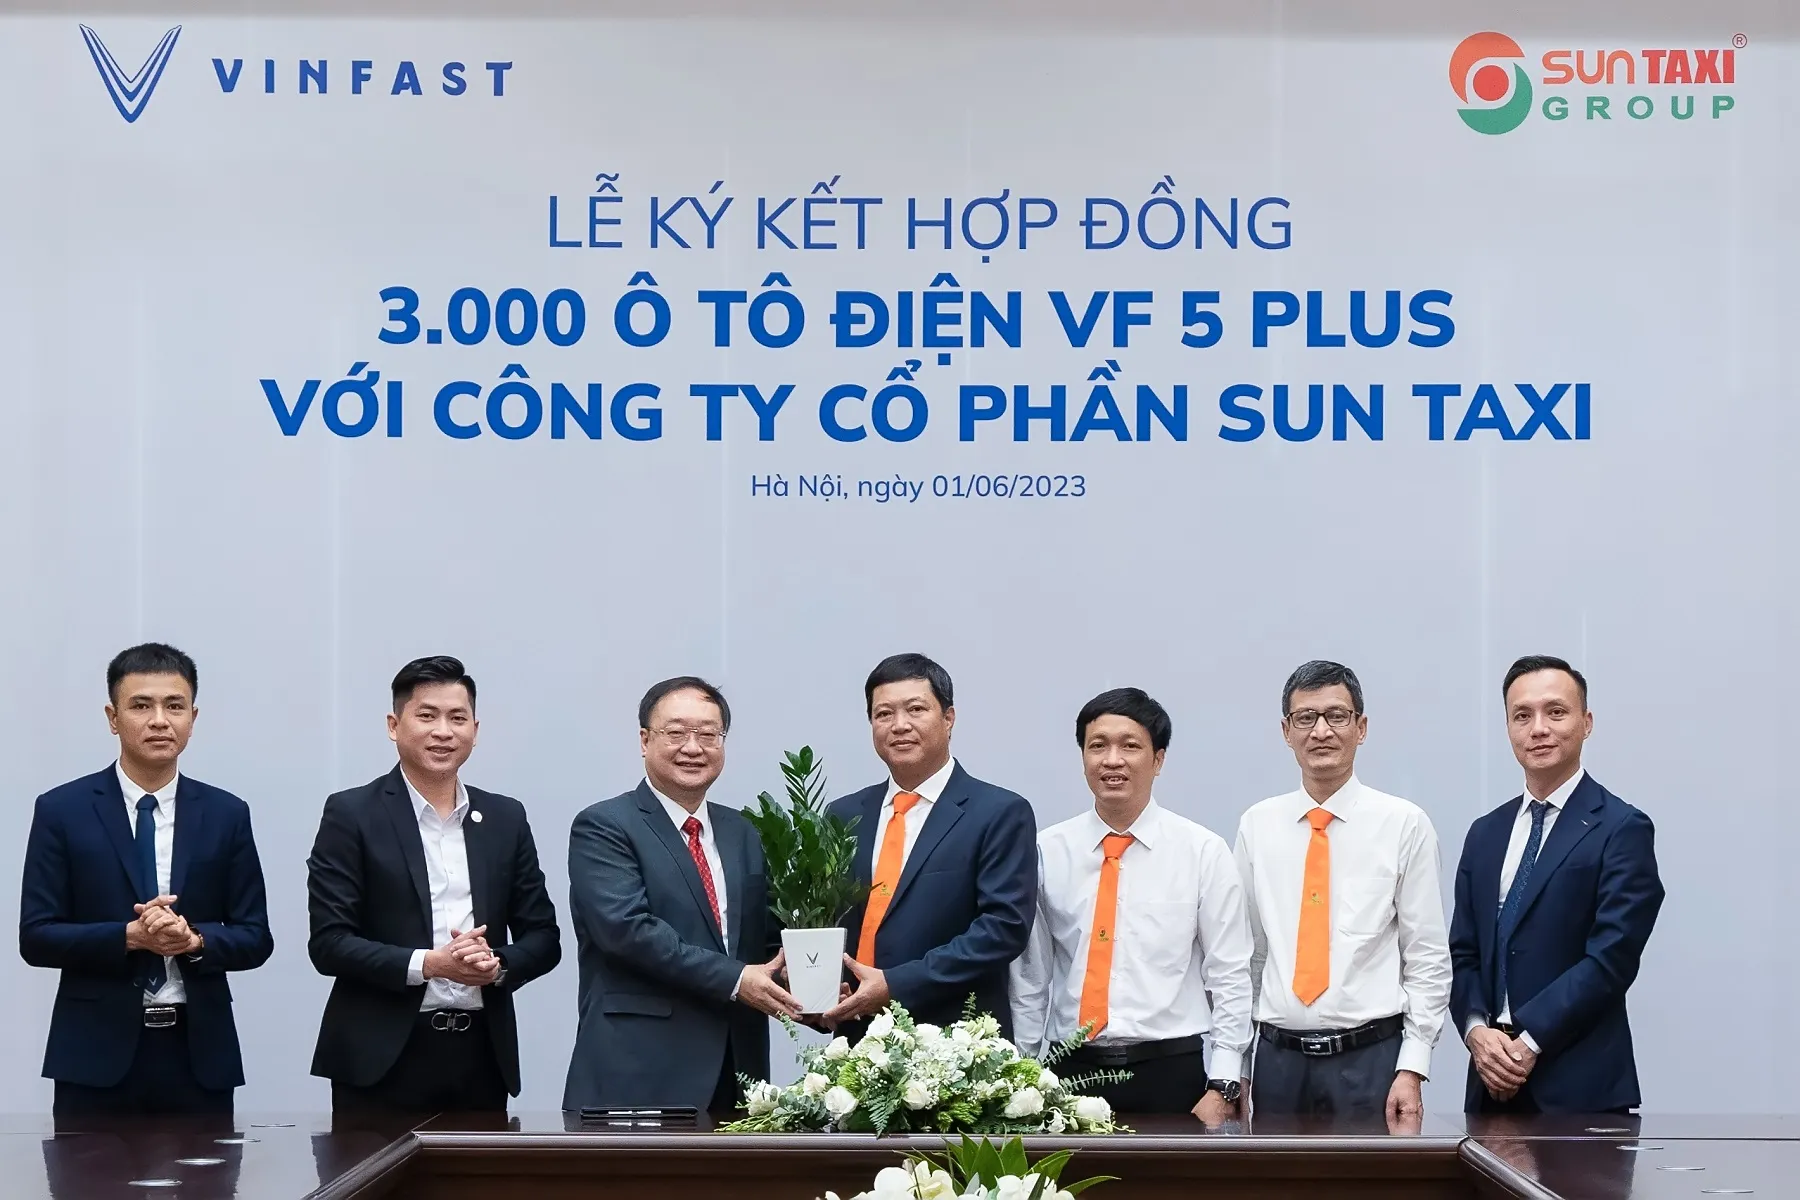 Sun Taxi mua 3,000 xe điện VinFast VF 5 Plus, thúc đẩy giao thông xanh tại Việt Nam